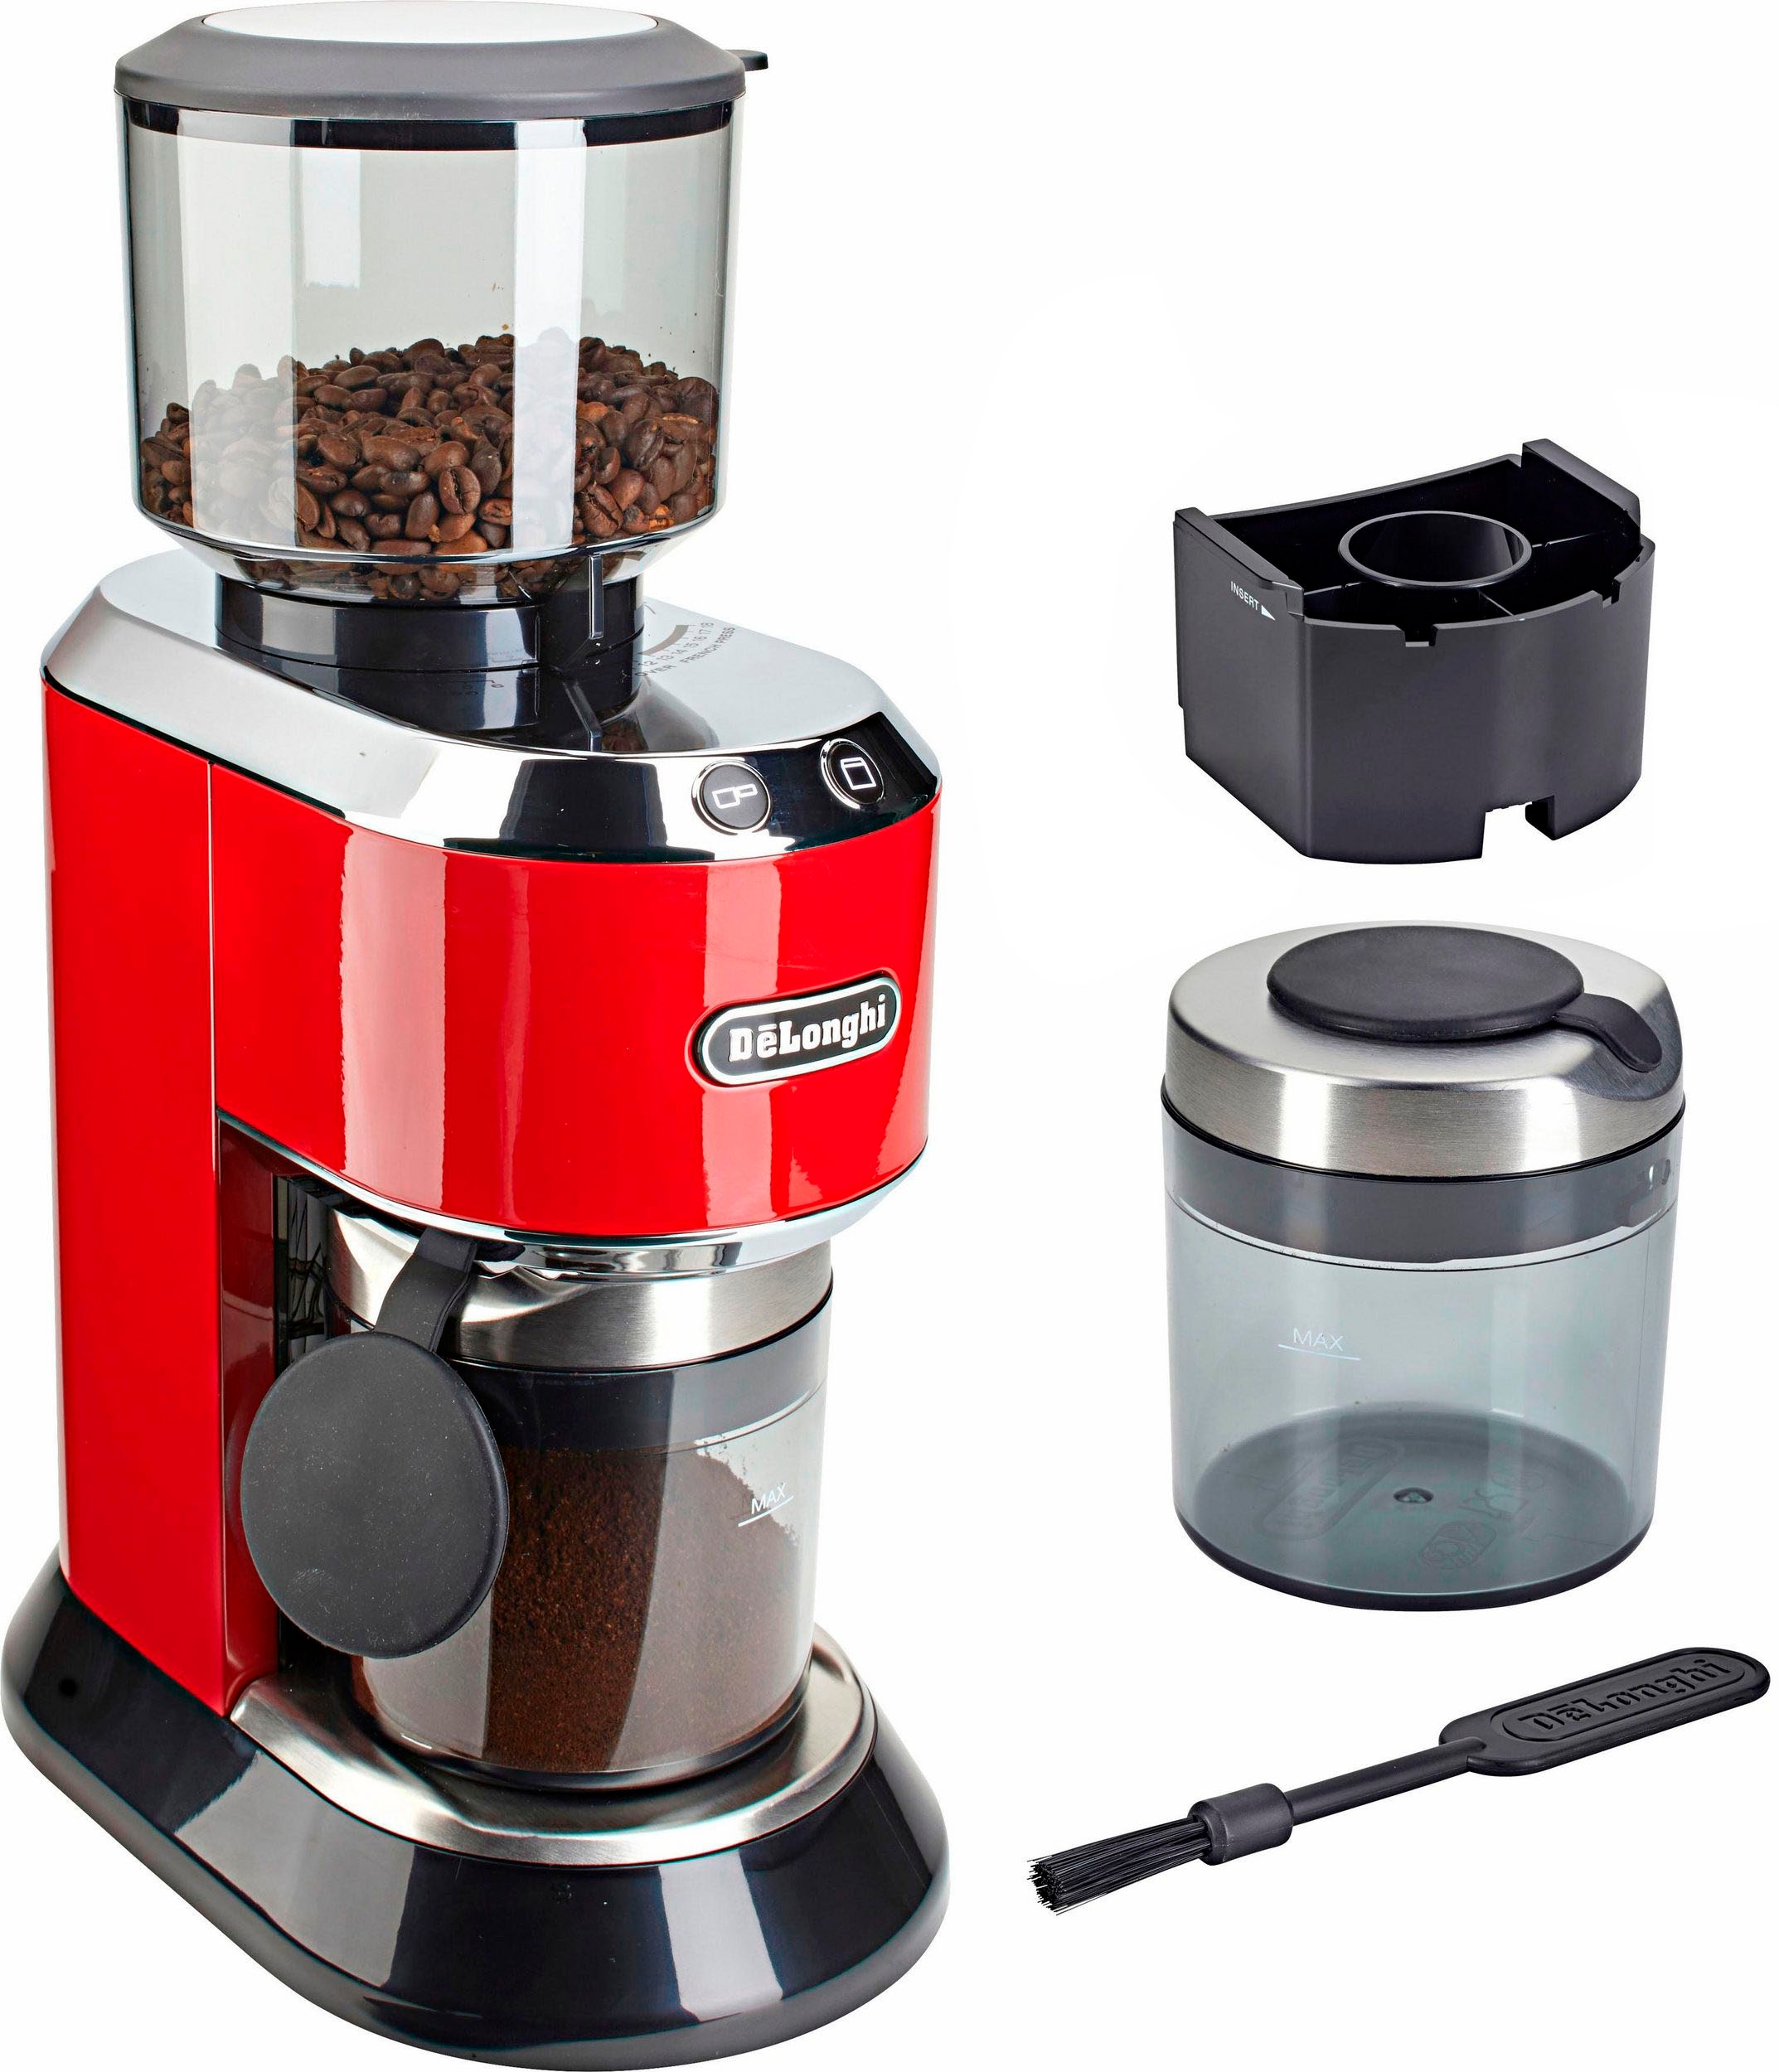 De\'Longhi Kaffeemühle »Dedica KG520.R«, 150 W, Kegelmahlwerk, 350 g  Bohnenbehälter auf Rechnung bestellen